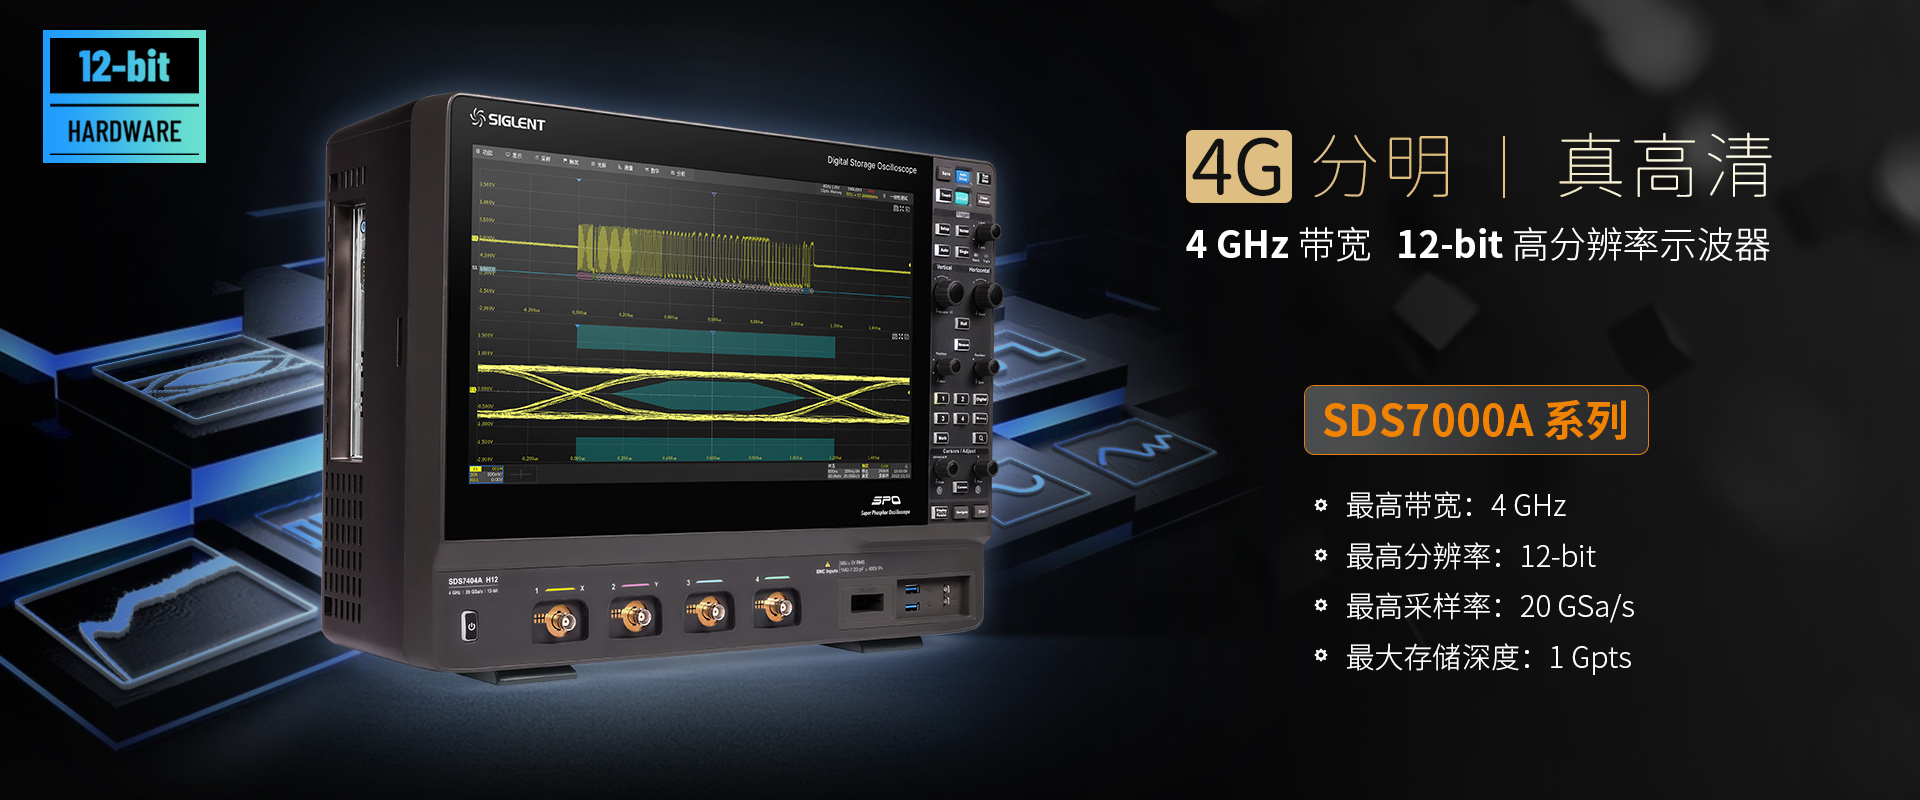 SDS7000A系列高分辨率示波器